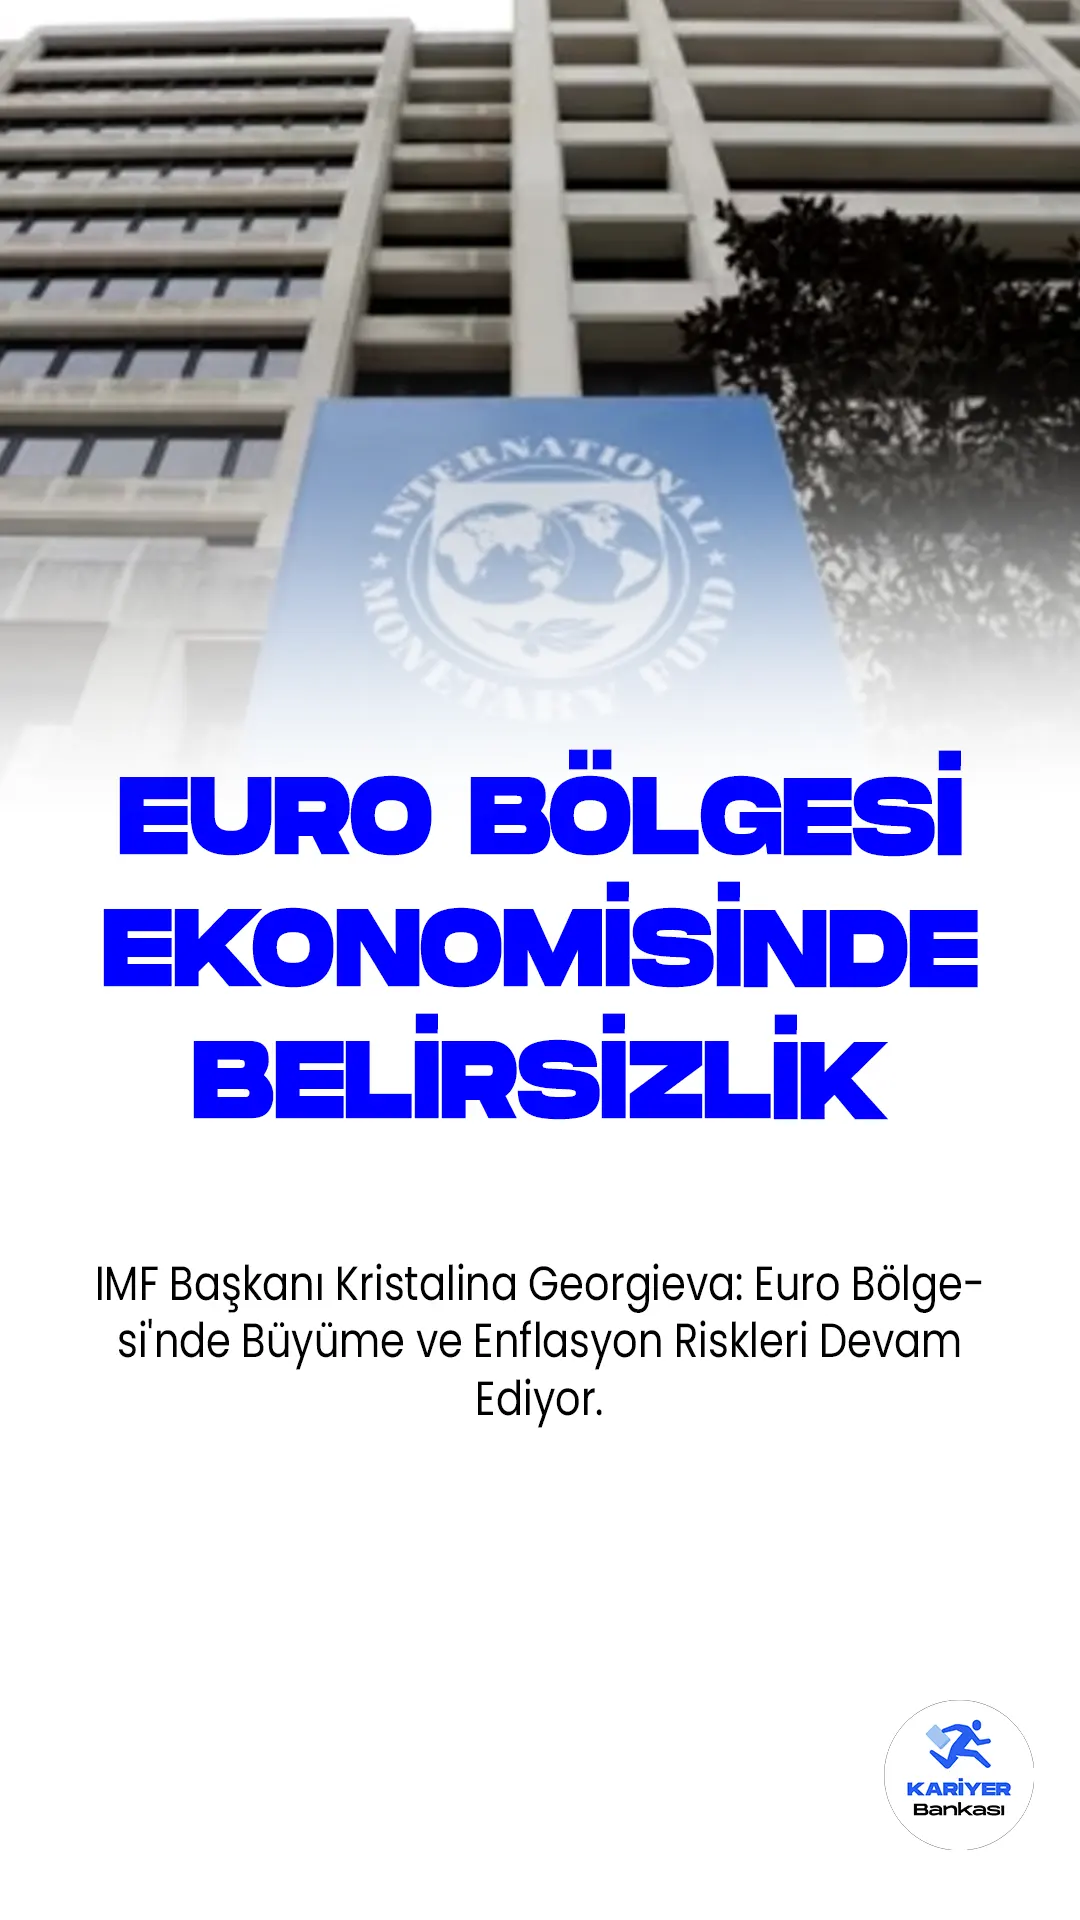 IMF Başkanı Kristalina Georgieva: Euro Bölgesi'nde Büyüme ve Enflasyon Riskleri Devam Ediyor.Uluslararası Para Fonu (IMF) Başkanı Kristalina Georgieva, Euro Bölgesi'nde büyüme için aşağı yönlü risklerin devam ettiğini ve enflasyonun ise yukarı yönlü bir risk olduğunu belirtti. Georgieva, Lüksemburg'da gerçekleştirilen Euro Grubu toplantısının ardından yaptığı açıklamada Euro Bölgesi'nin Rusya-Ukrayna savaşıyla birlikte büyük ticaret kaybı yaşamasına rağmen dayanıklılık gösterdiğini vurguladı.